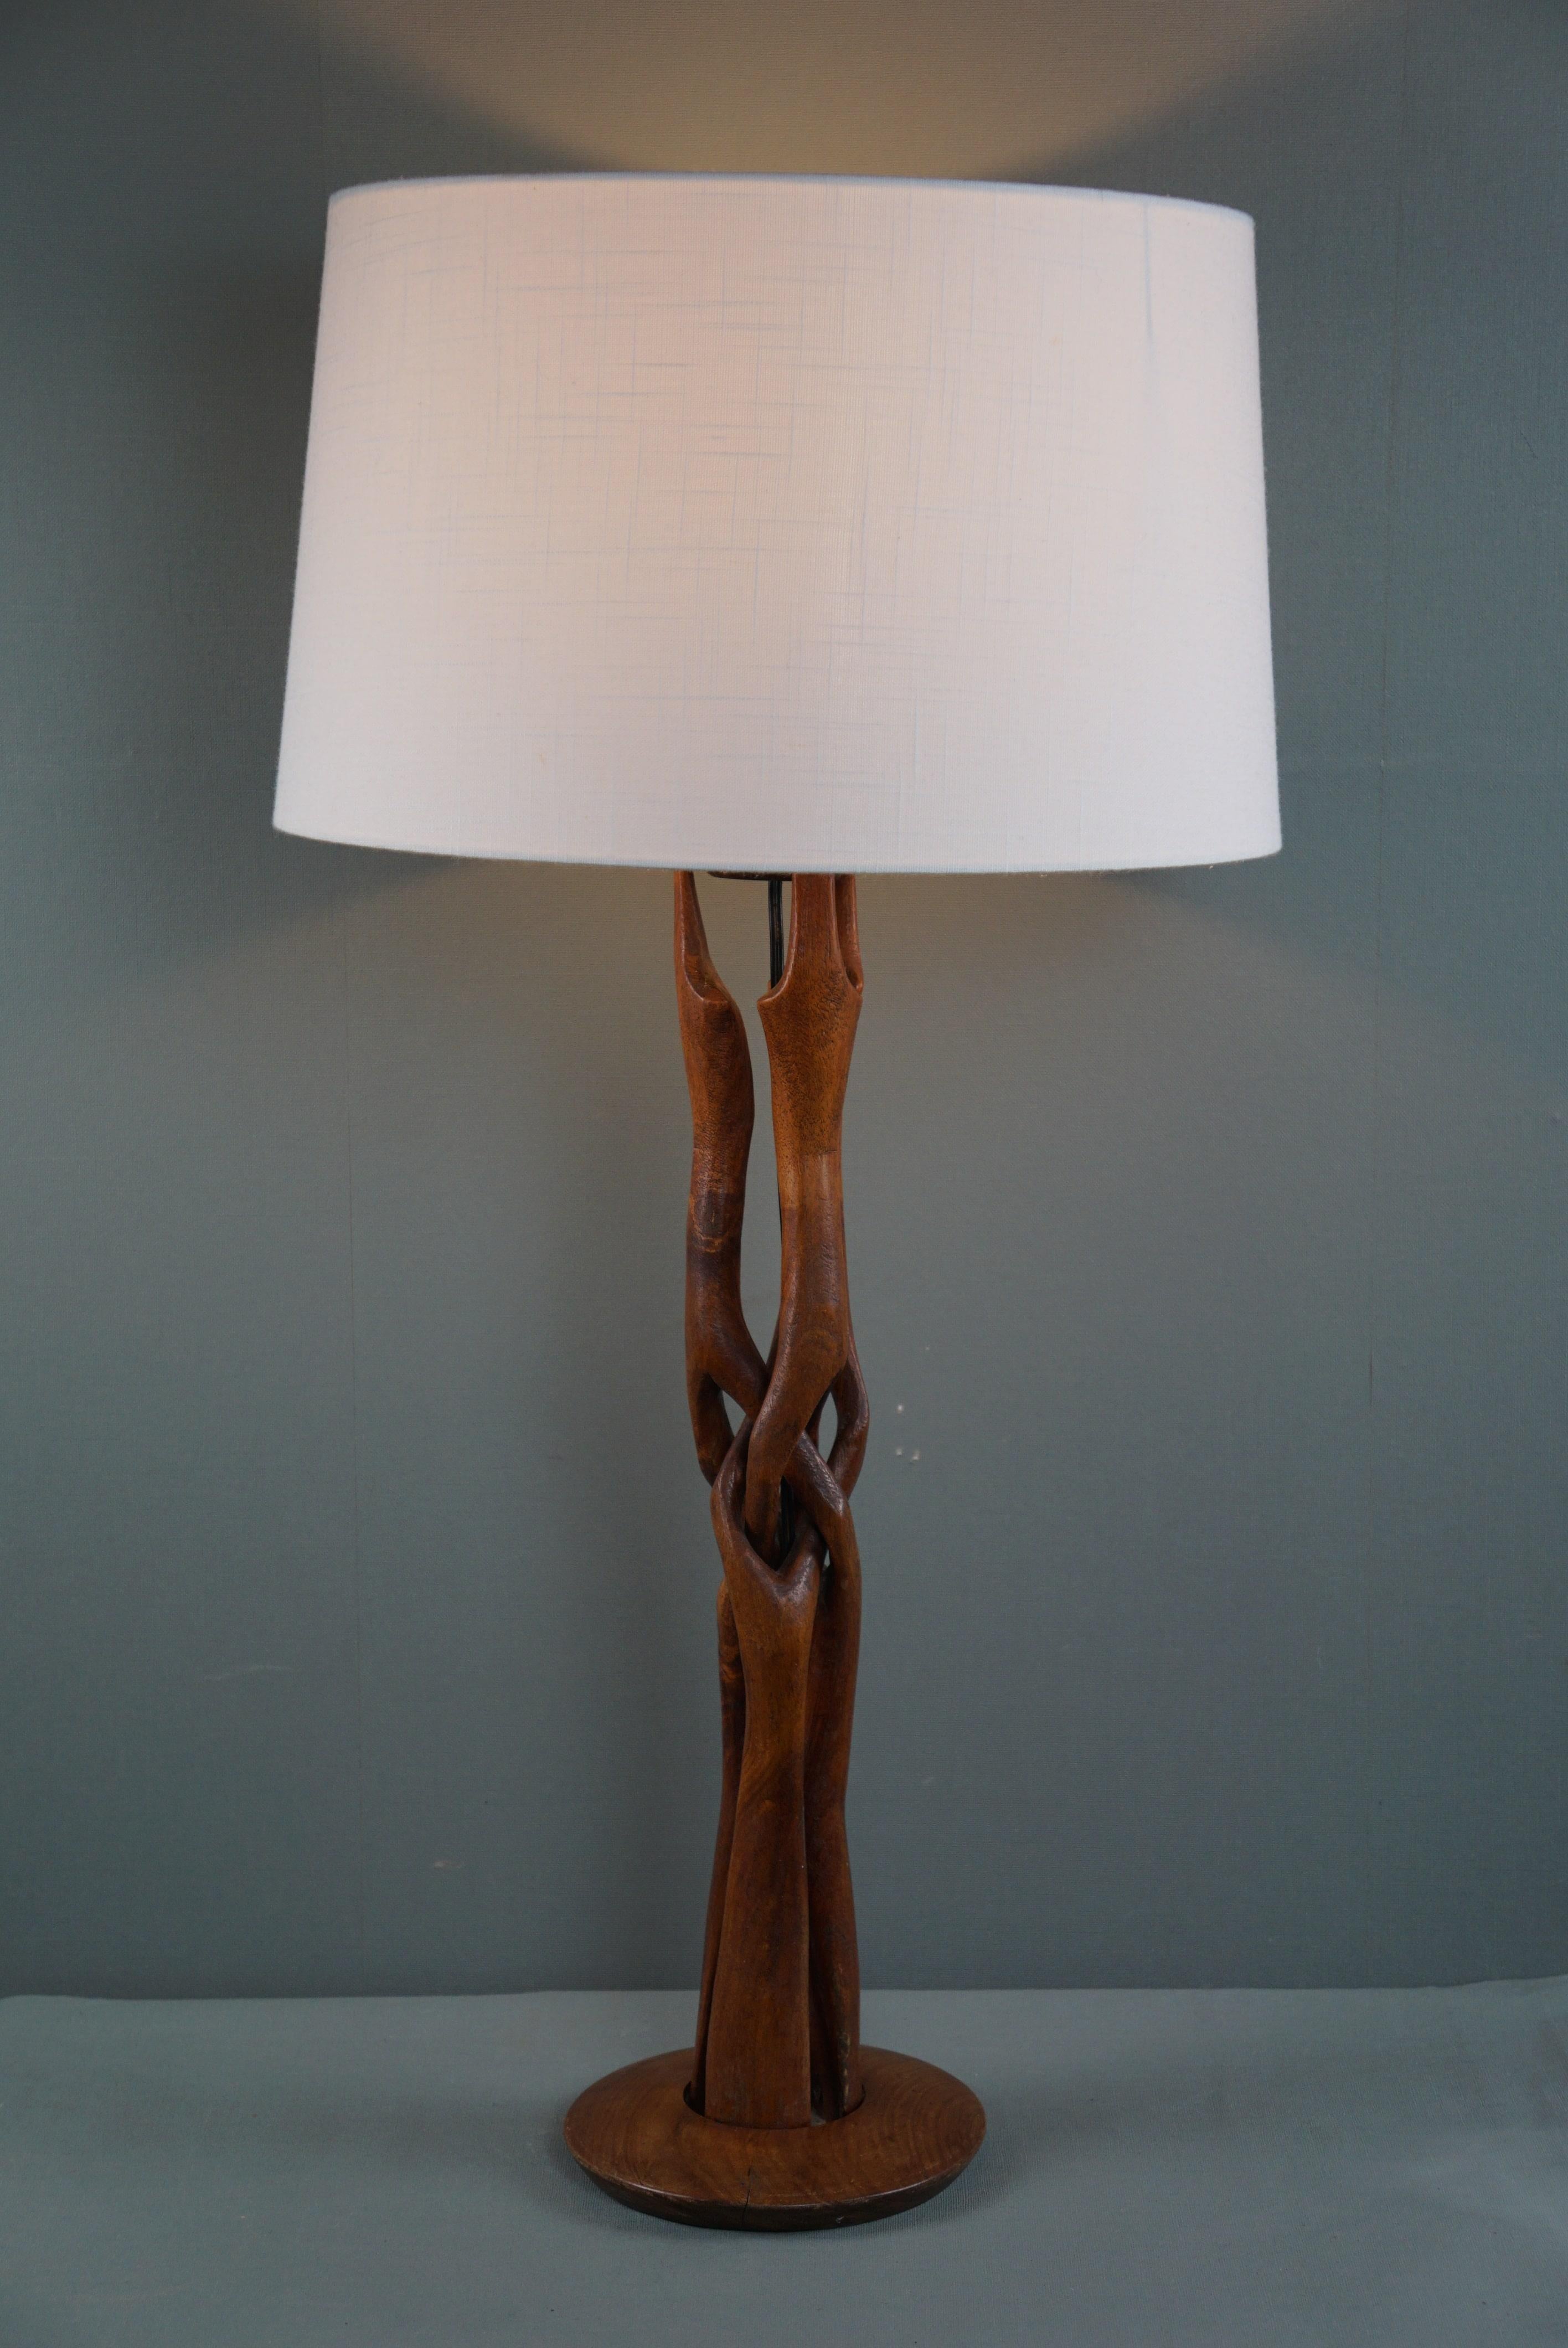 Cette impressionnante lampe design en bois des années 1960 est proposée avec une base étonnamment conçue.

Très impressionnante, cette magnifique lampe à poser en bois sculpté présente un aspect ludique mais contemporain grâce à sa base de forme